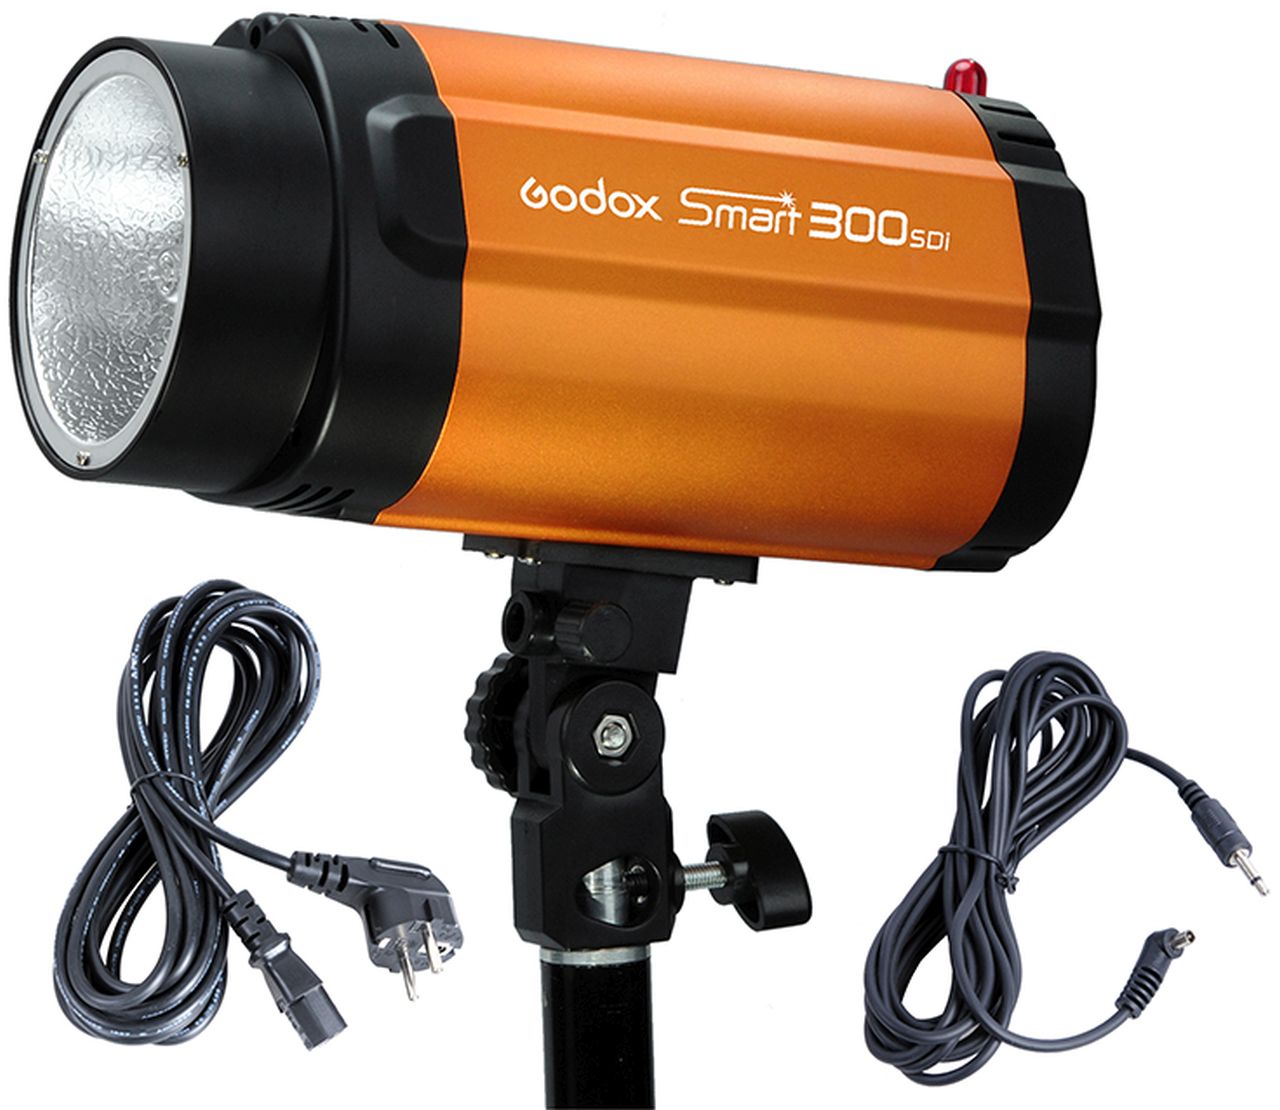 ゴドックス GODOX smart 300SDi 撮影セット - 生活家電・空調